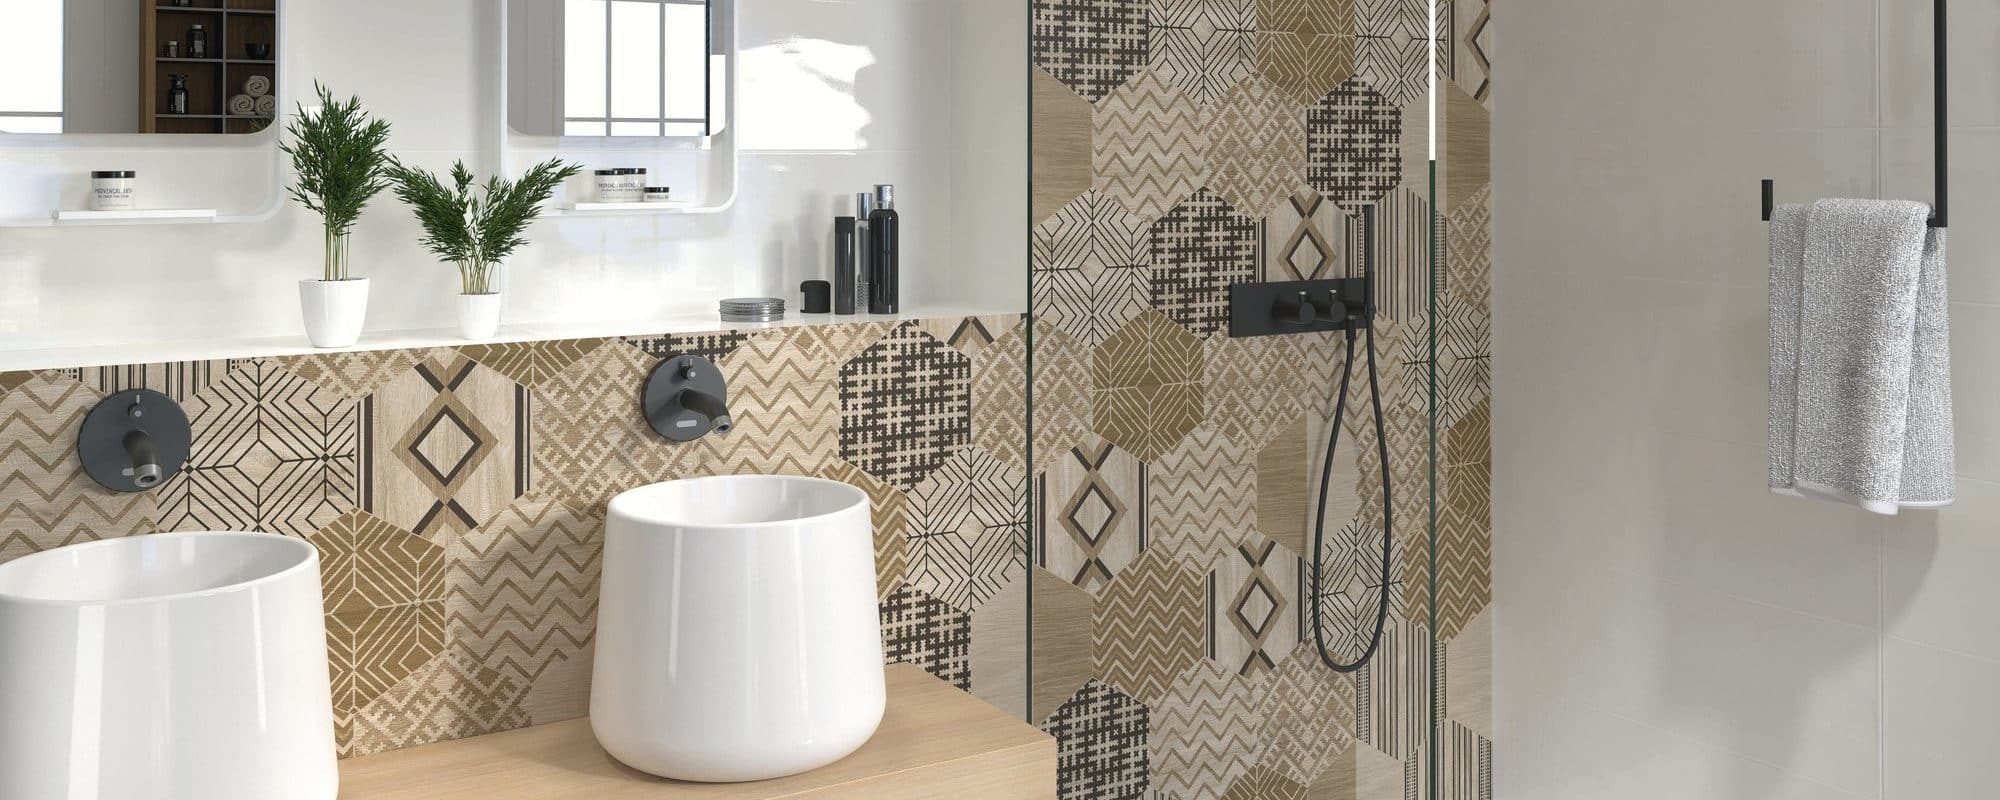 ALABAMA wood effect porcelain bathroom tiles uk slider 6